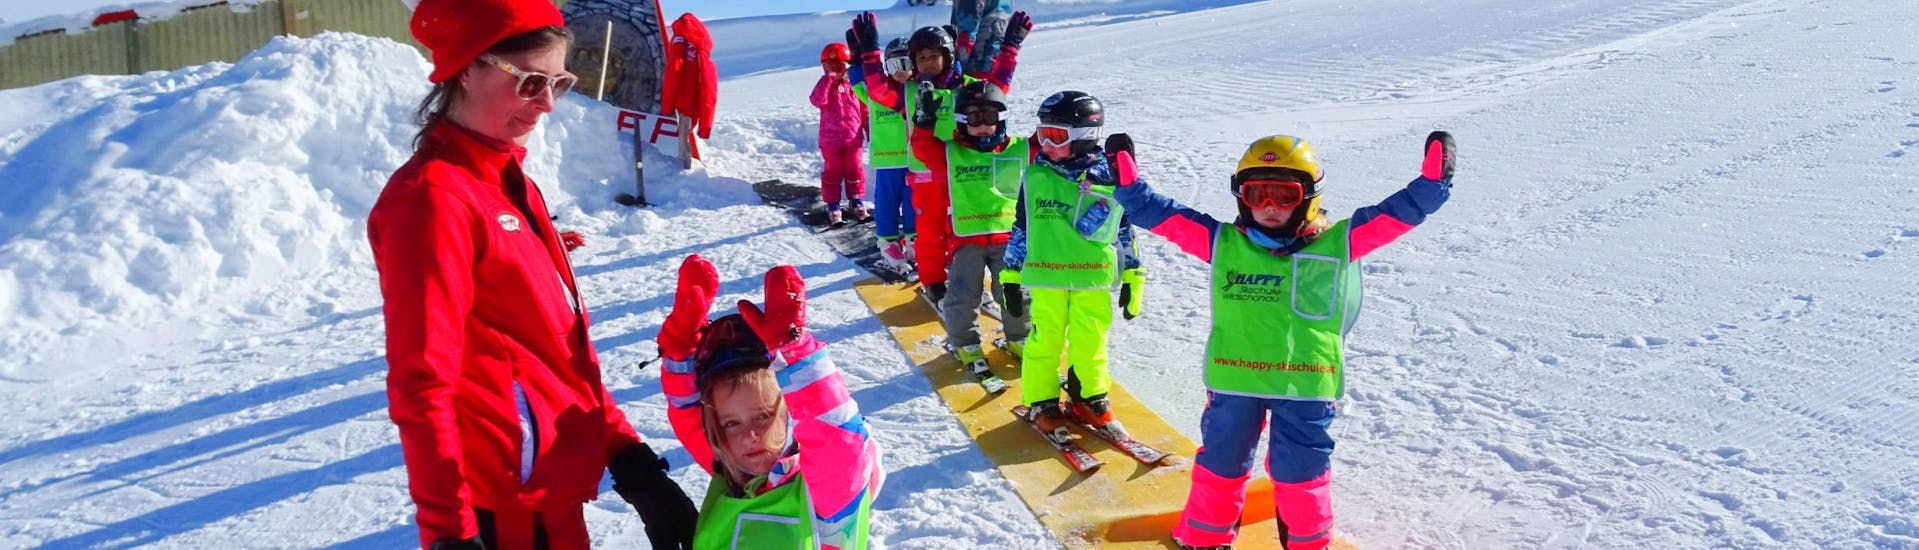 Skilessen voor Kinderen (5-13 jaar) voor Beginners - Halve Dag.